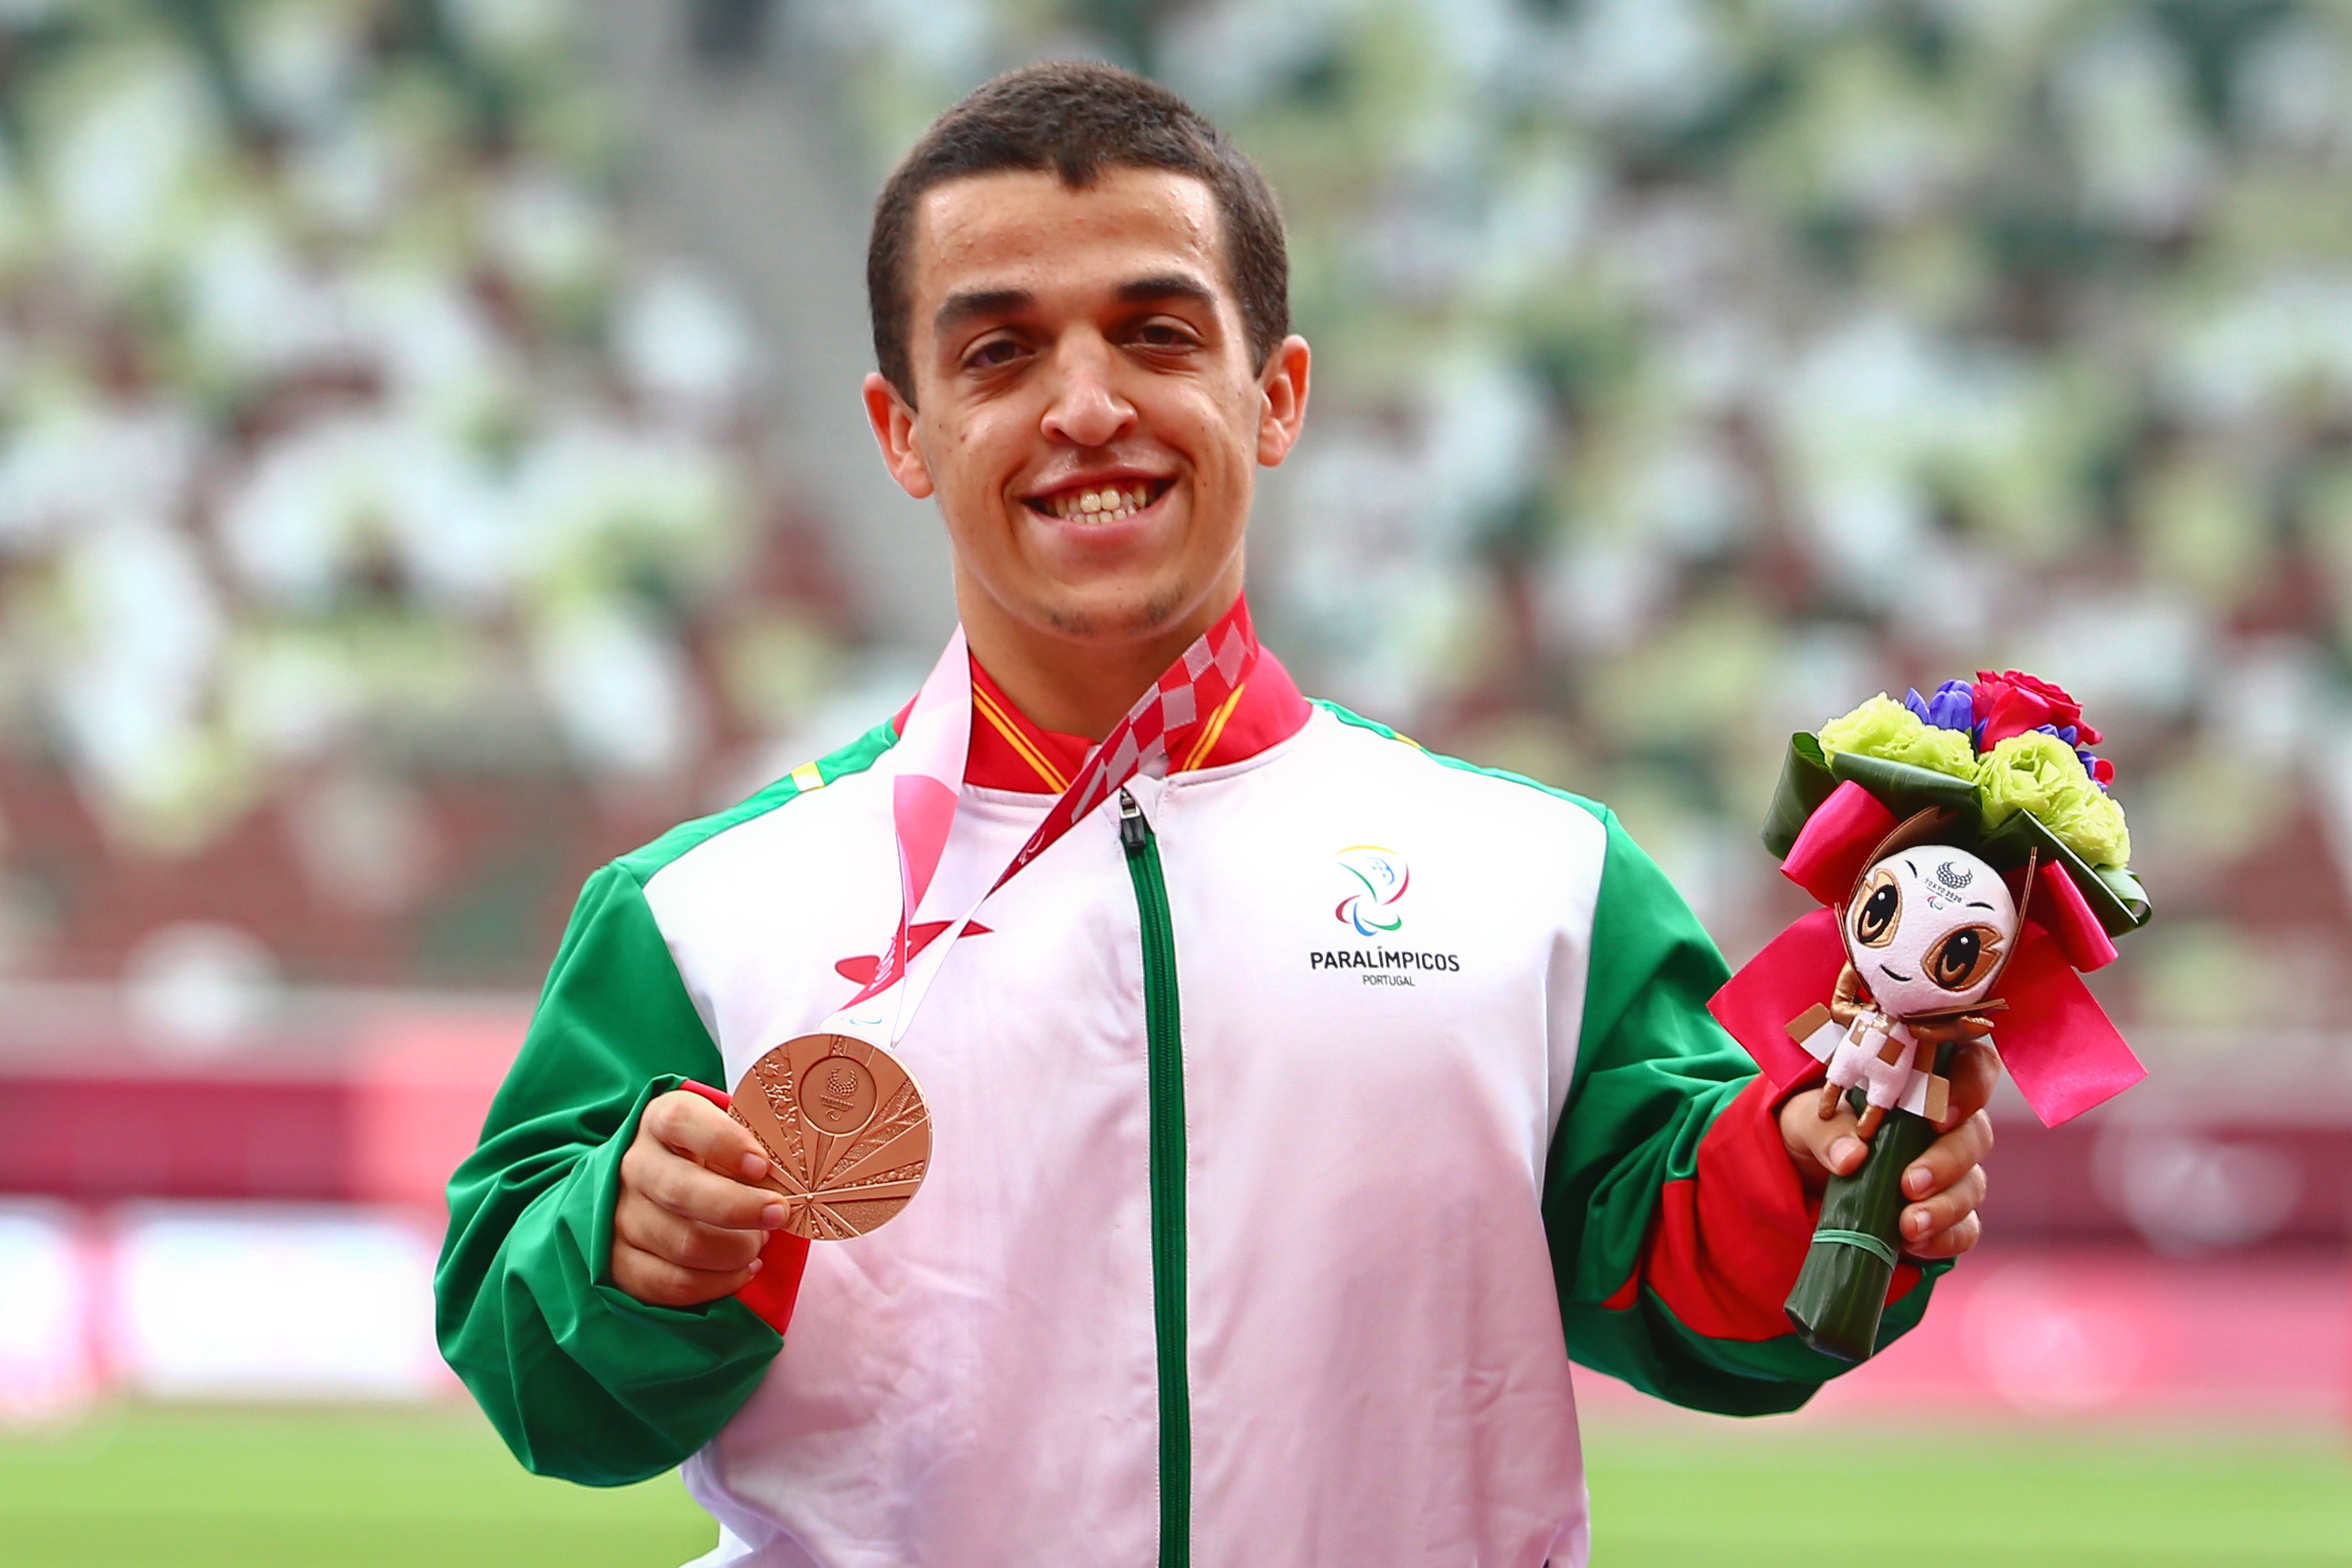 Miguel Monteiro medalha bronze jogos paralímpicos tóquio 2020